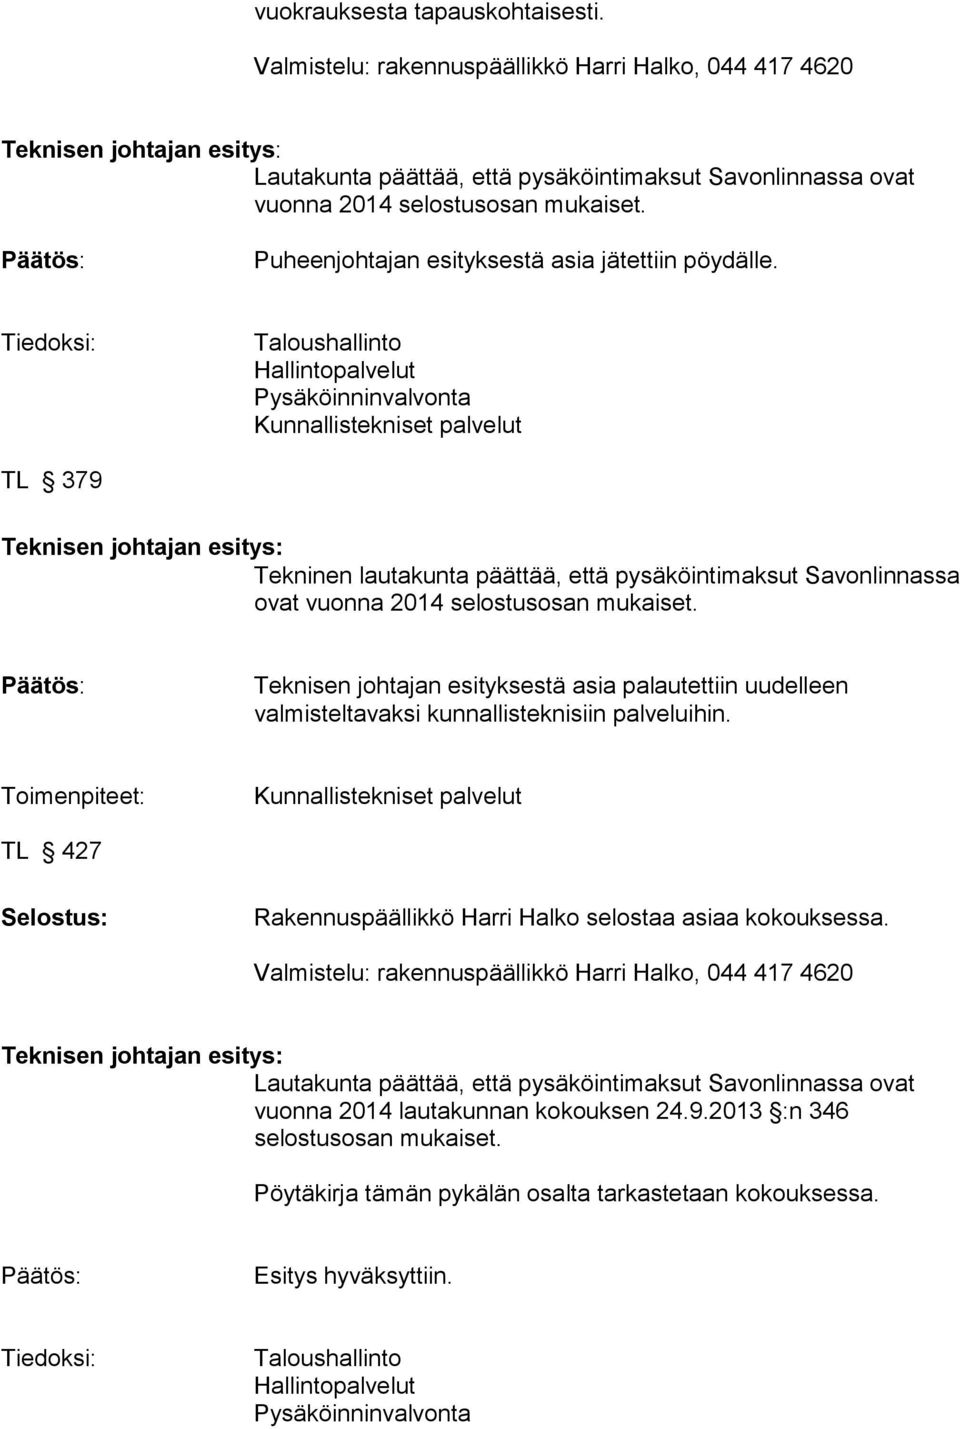 Tiedoksi: Taloushallinto Hallintopalvelut Pysäköinninvalvonta Kunnallistekniset palvelut TL 379 Tekninen lautakunta päättää, että pysäköintimaksut Savonlinnassa ovat vuonna 2014 selostusosan mukaiset.